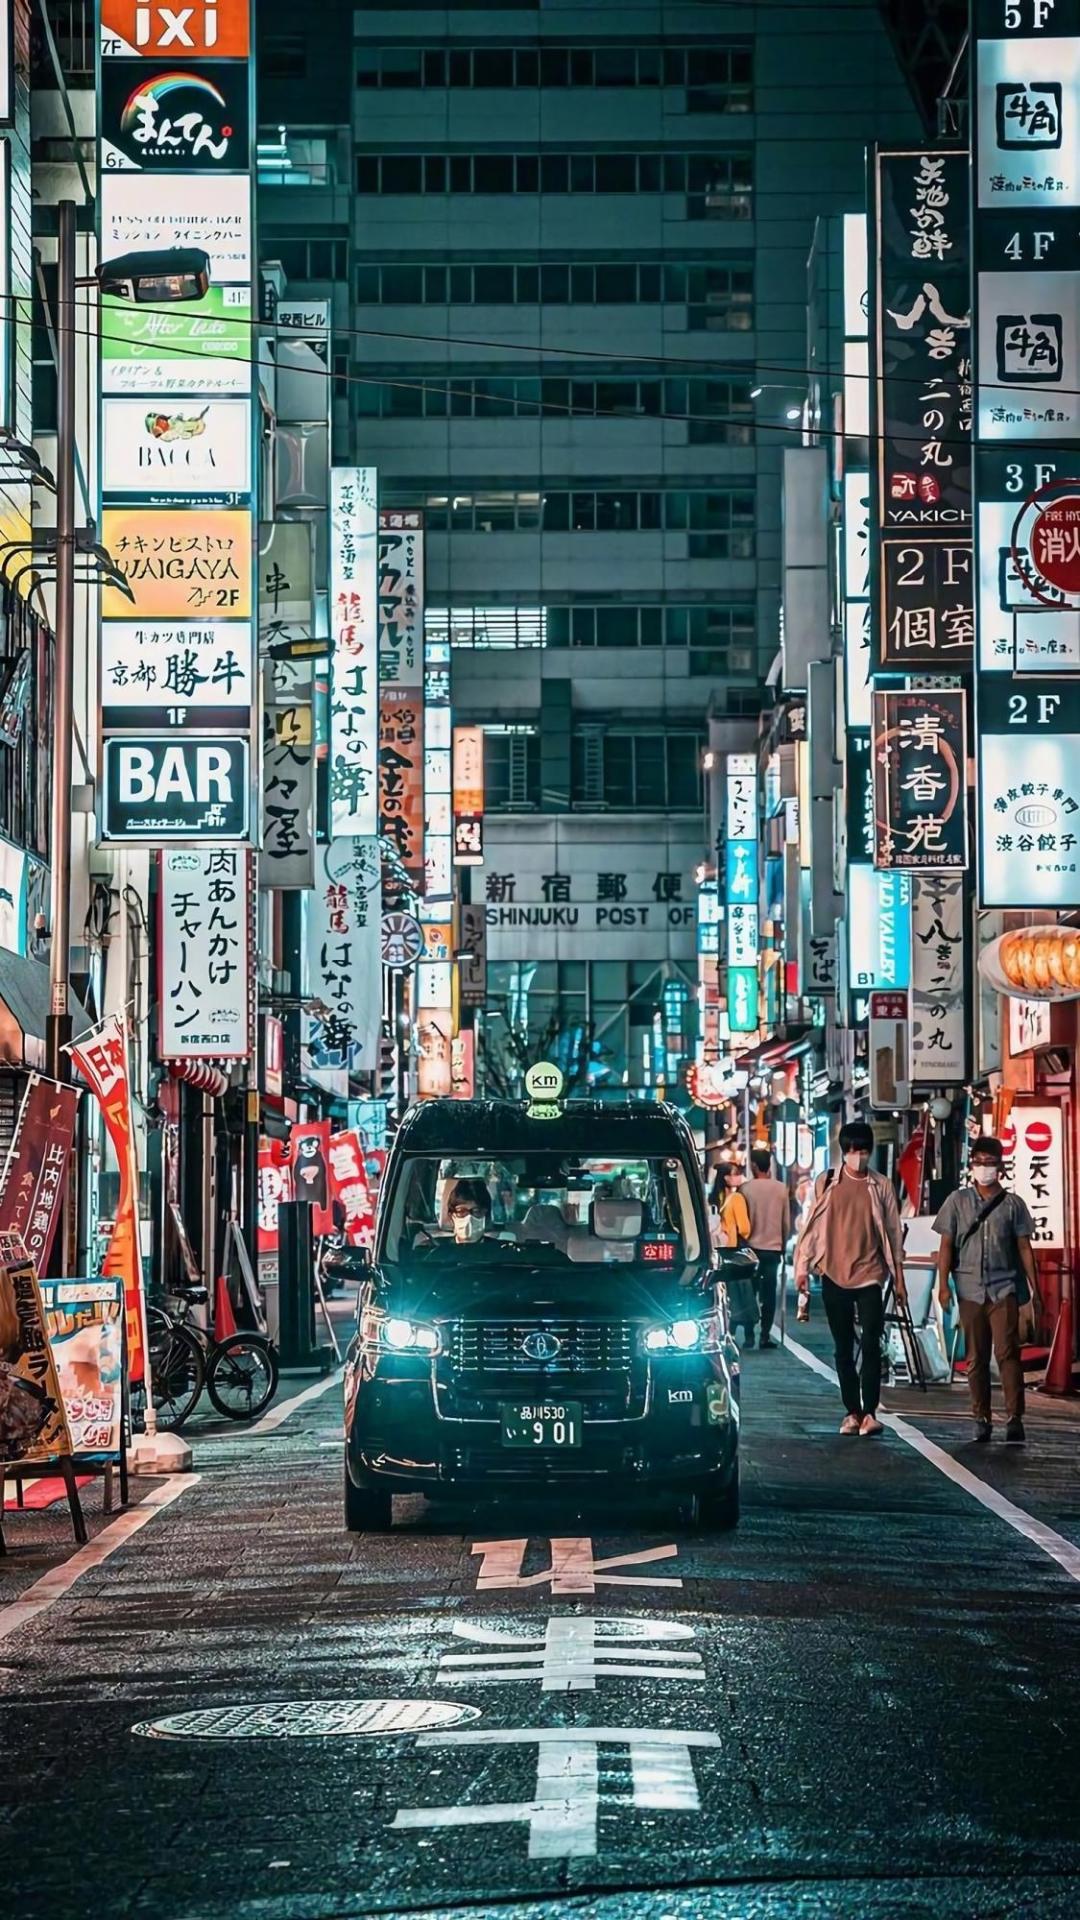 繁华的日本城市街景风光